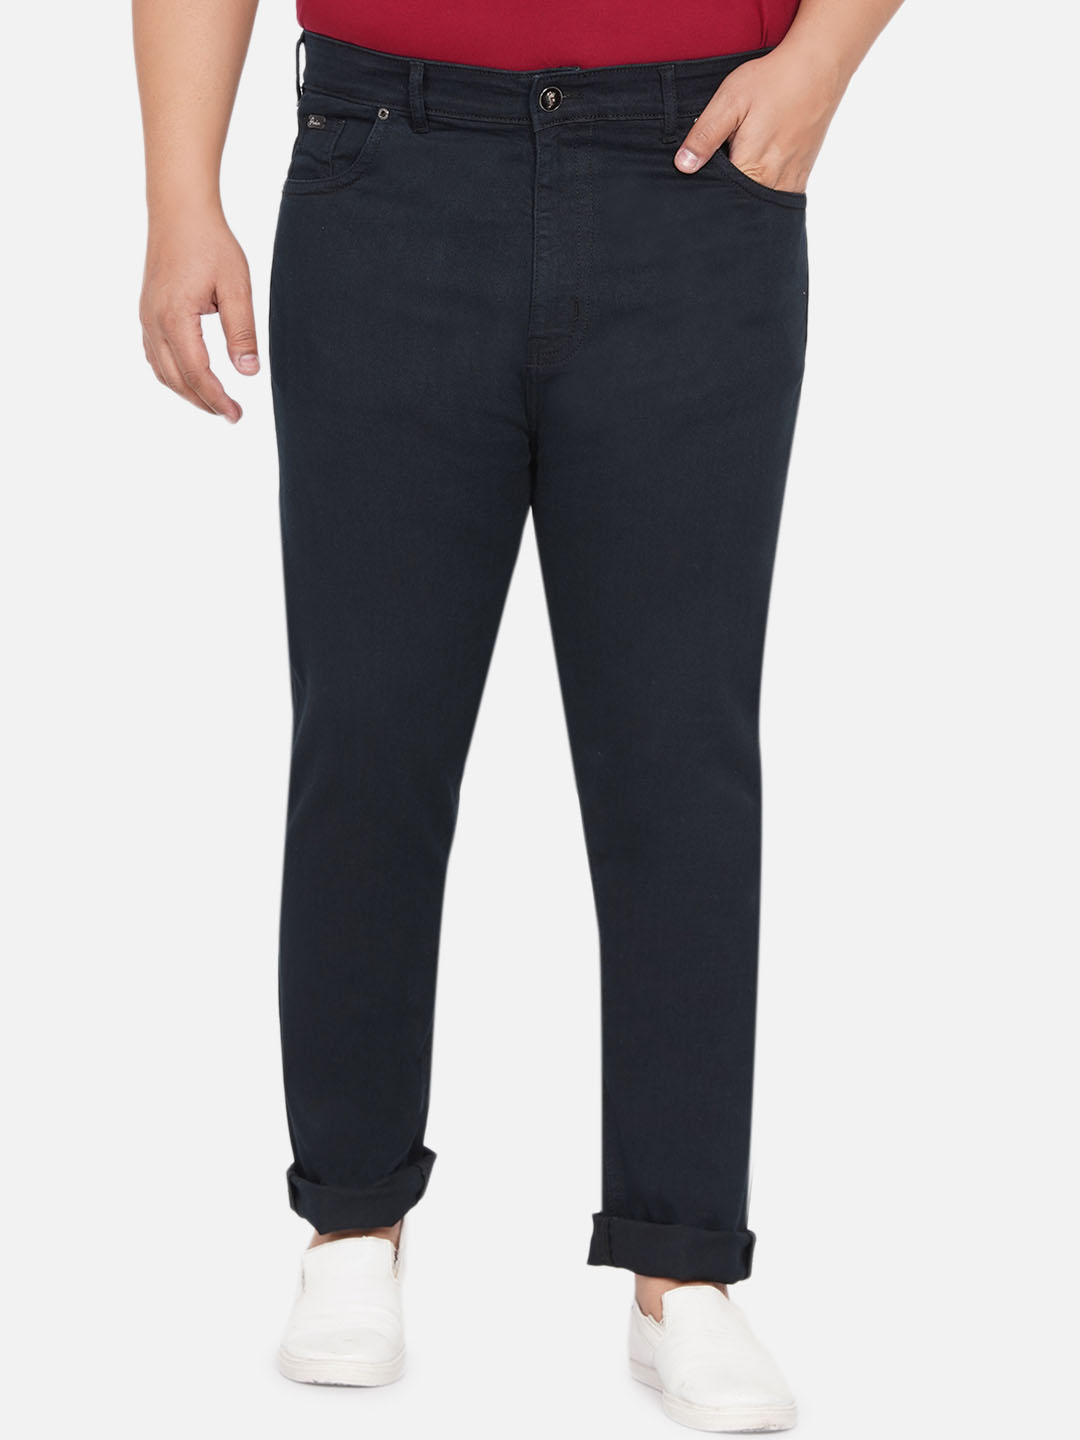 bottomwear/jeans/JPJ12258/jpj12258-1.jpg